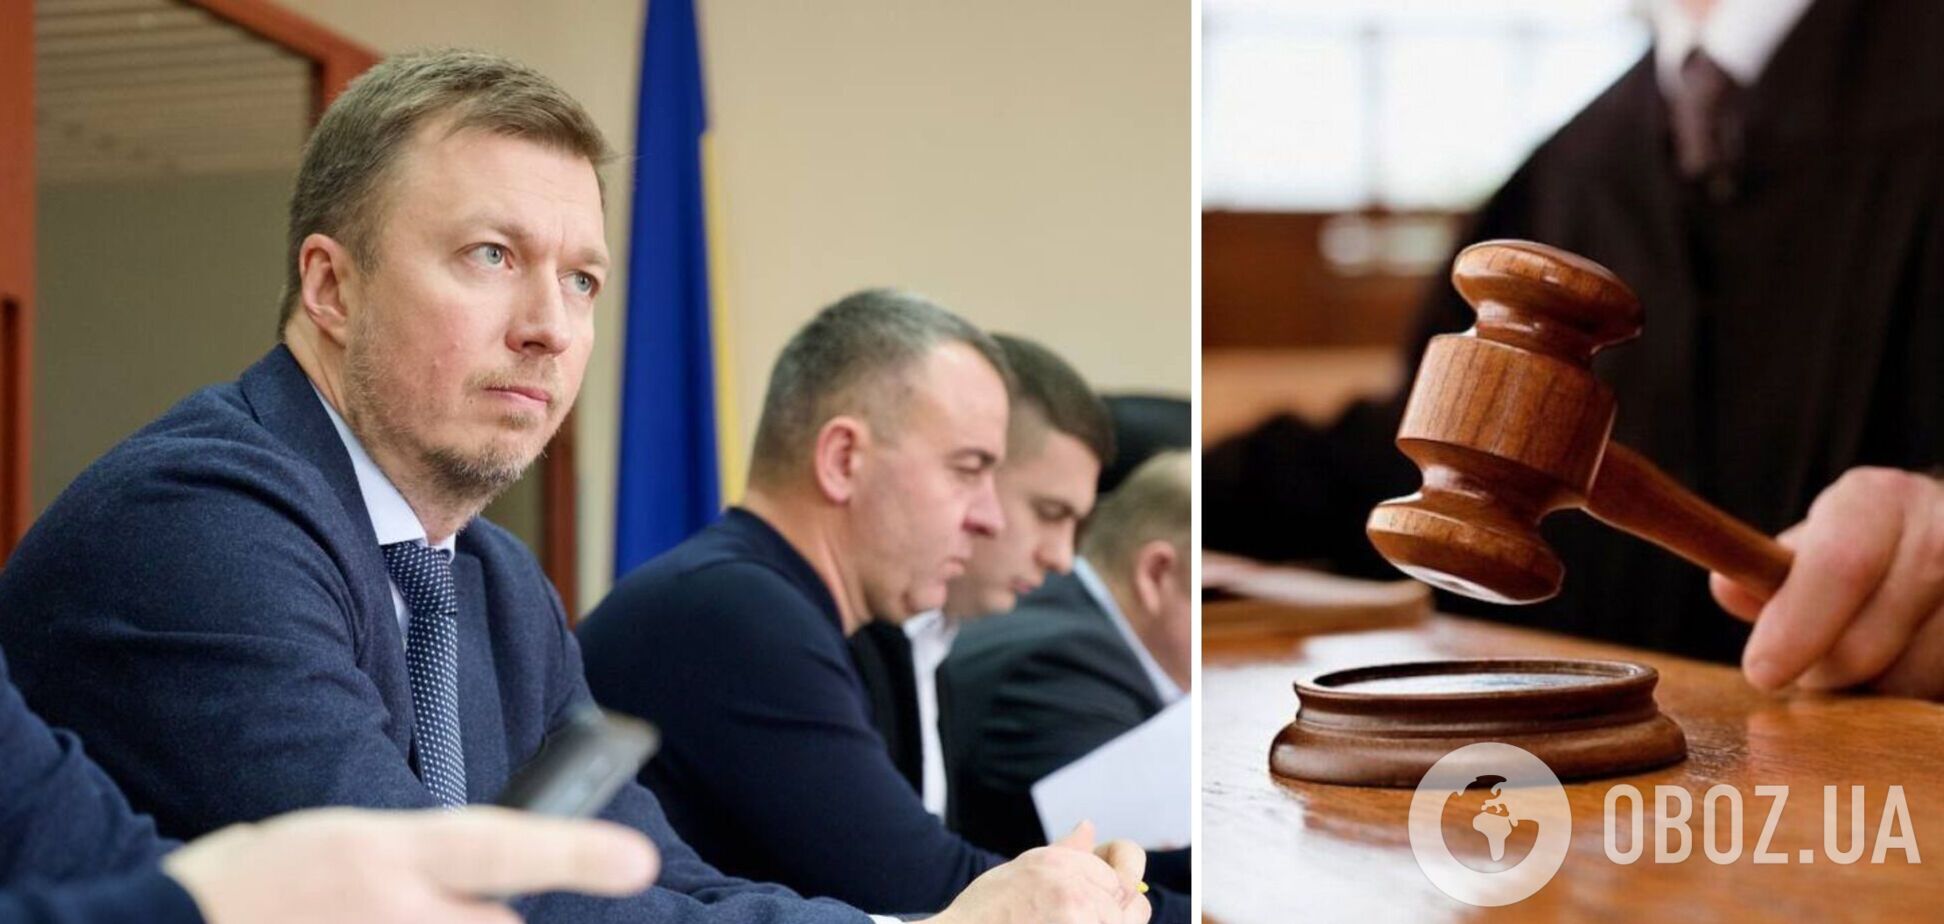 Суд отправил под домашний арест нардепа Николаенко, который насмерть сбил 18-летнюю девушку: детали дела